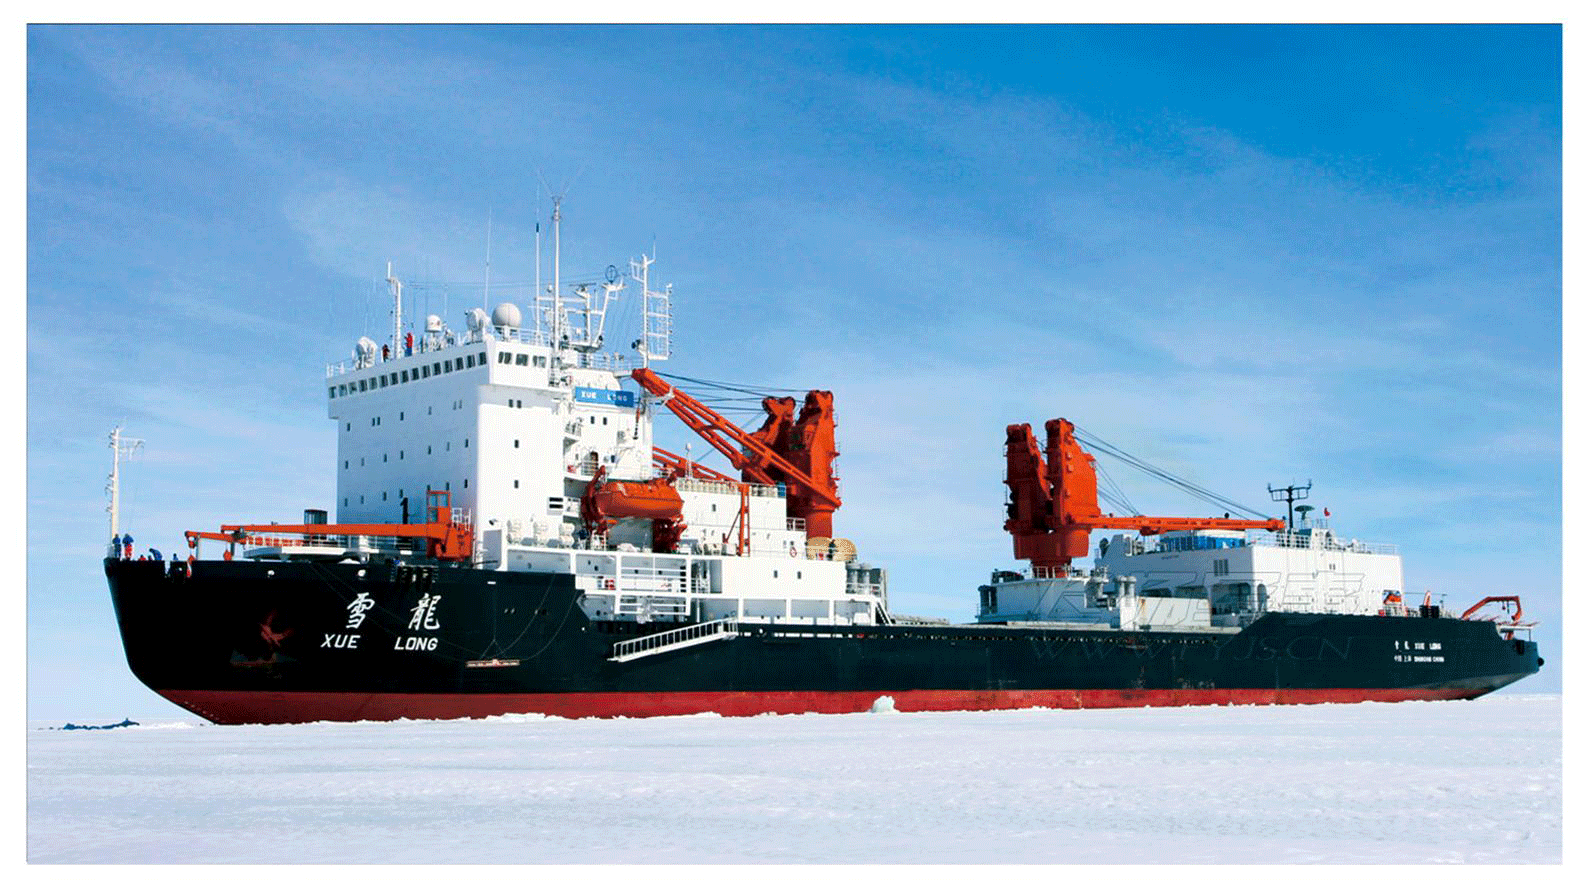 极地考察船“雪龙号”